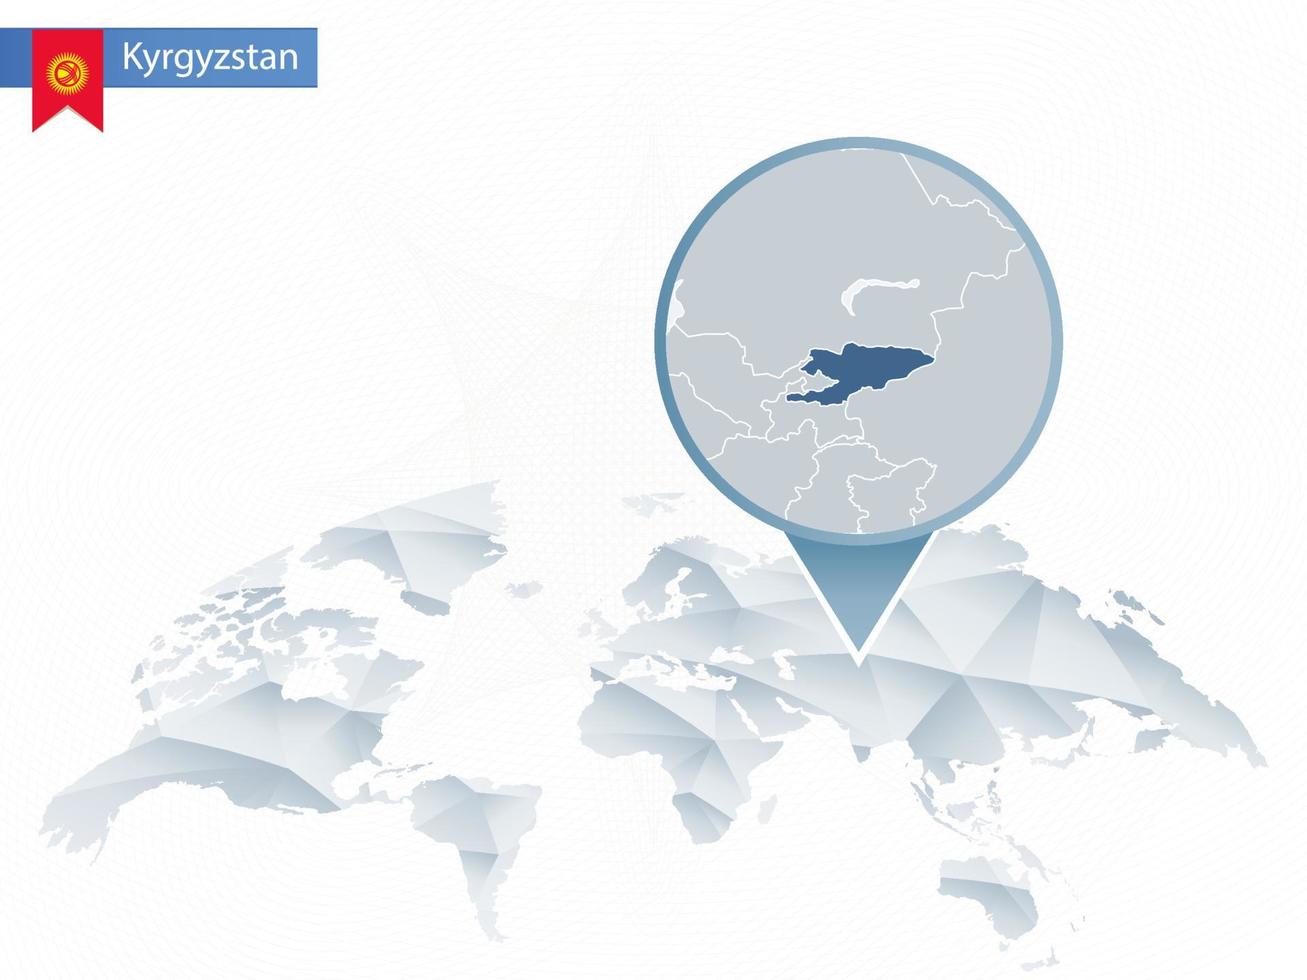 carte du monde arrondie abstraite avec carte détaillée du kirghizistan épinglée. vecteur